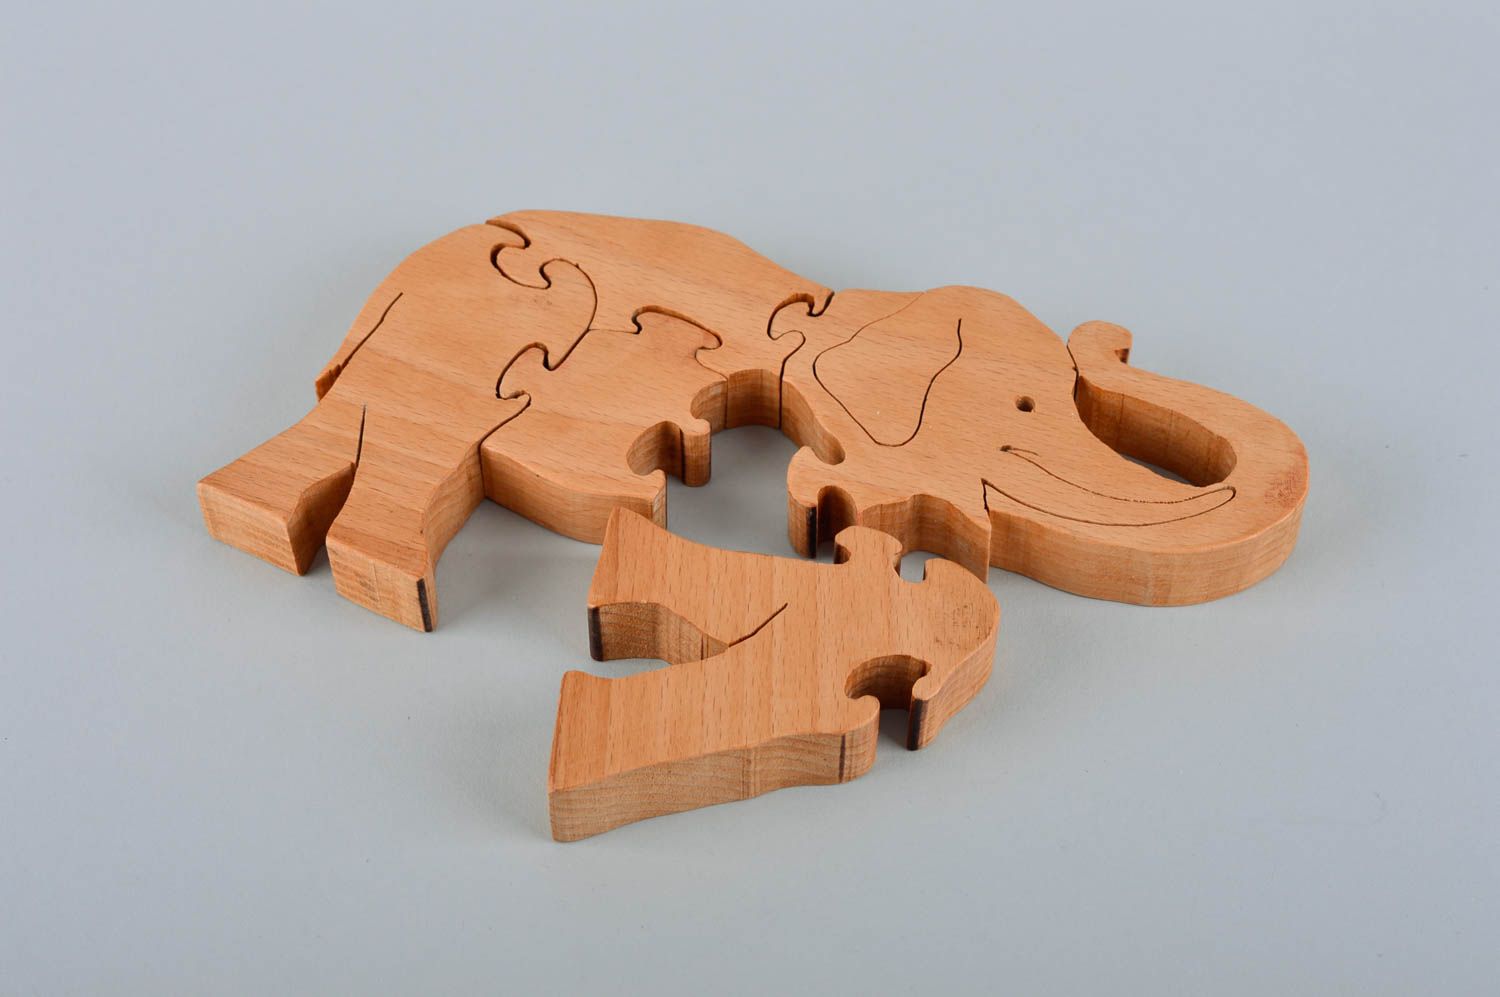 HEVIRGO bricolage Puzzle maison feuille anti-poussière en bois Puzzle jouet  3D Dessert boutique Miniature maison de poupée accessoires enfants cadeau 